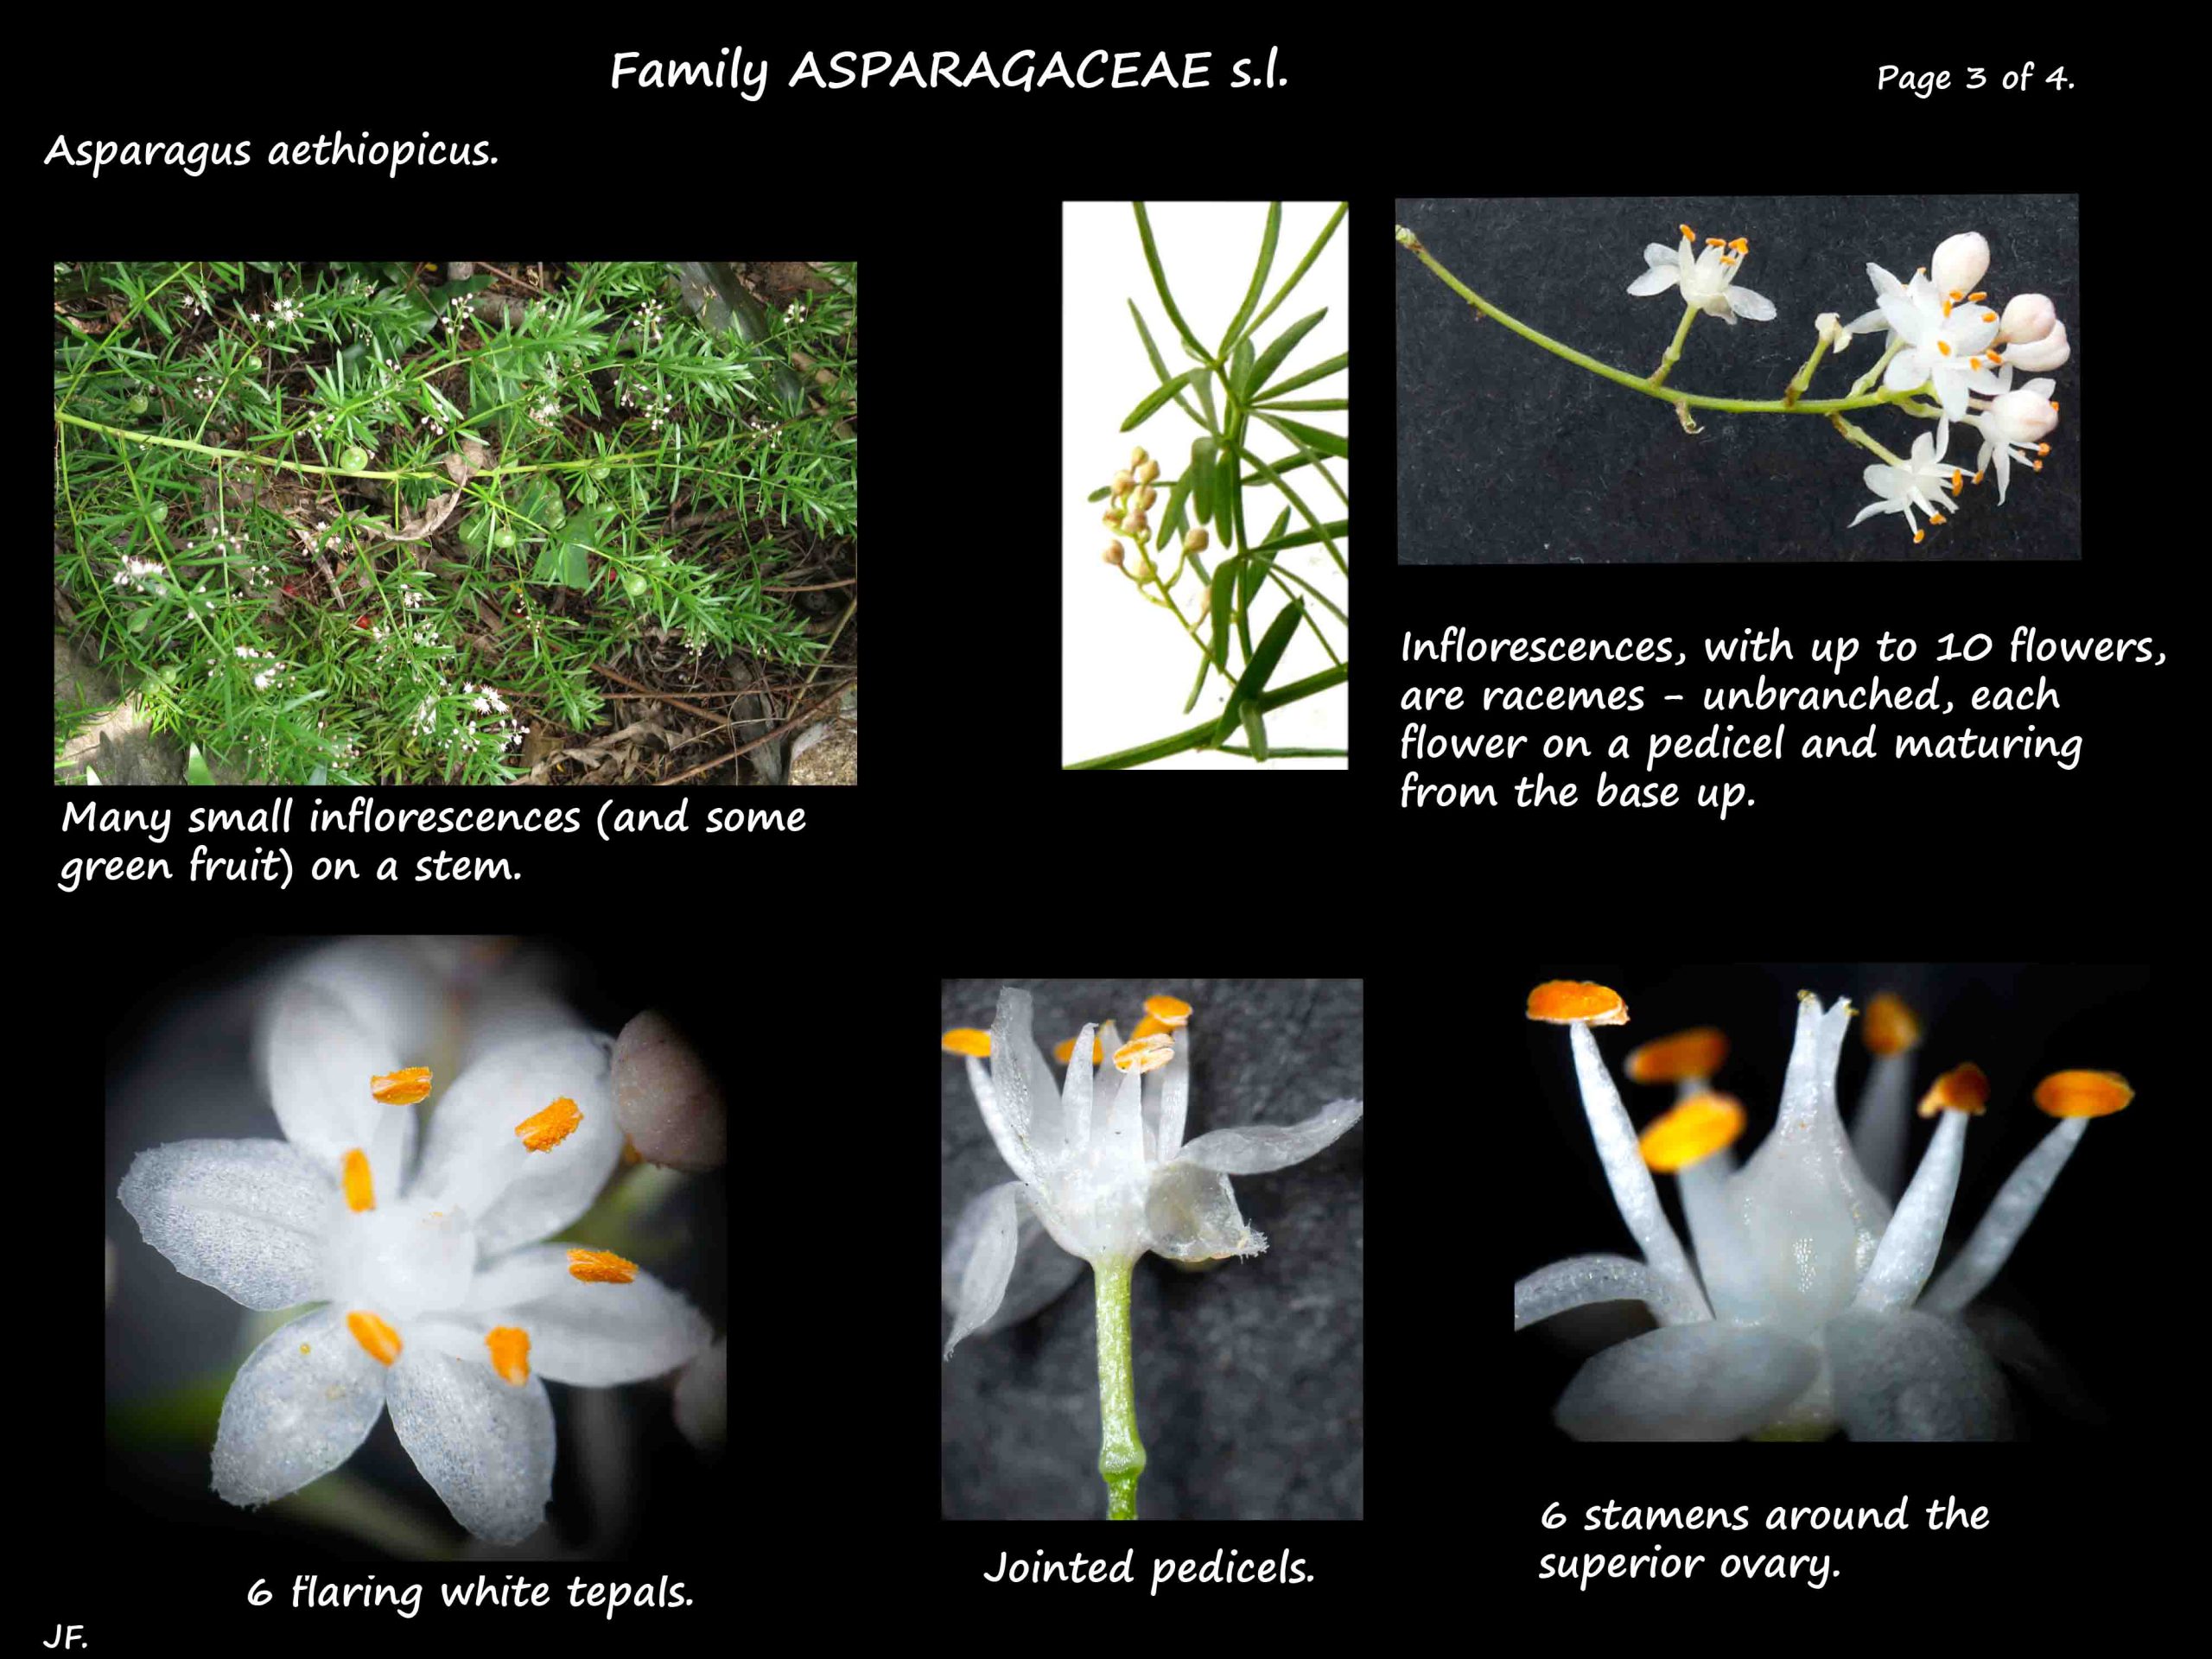 3 Asparagus aethiopicus flowers